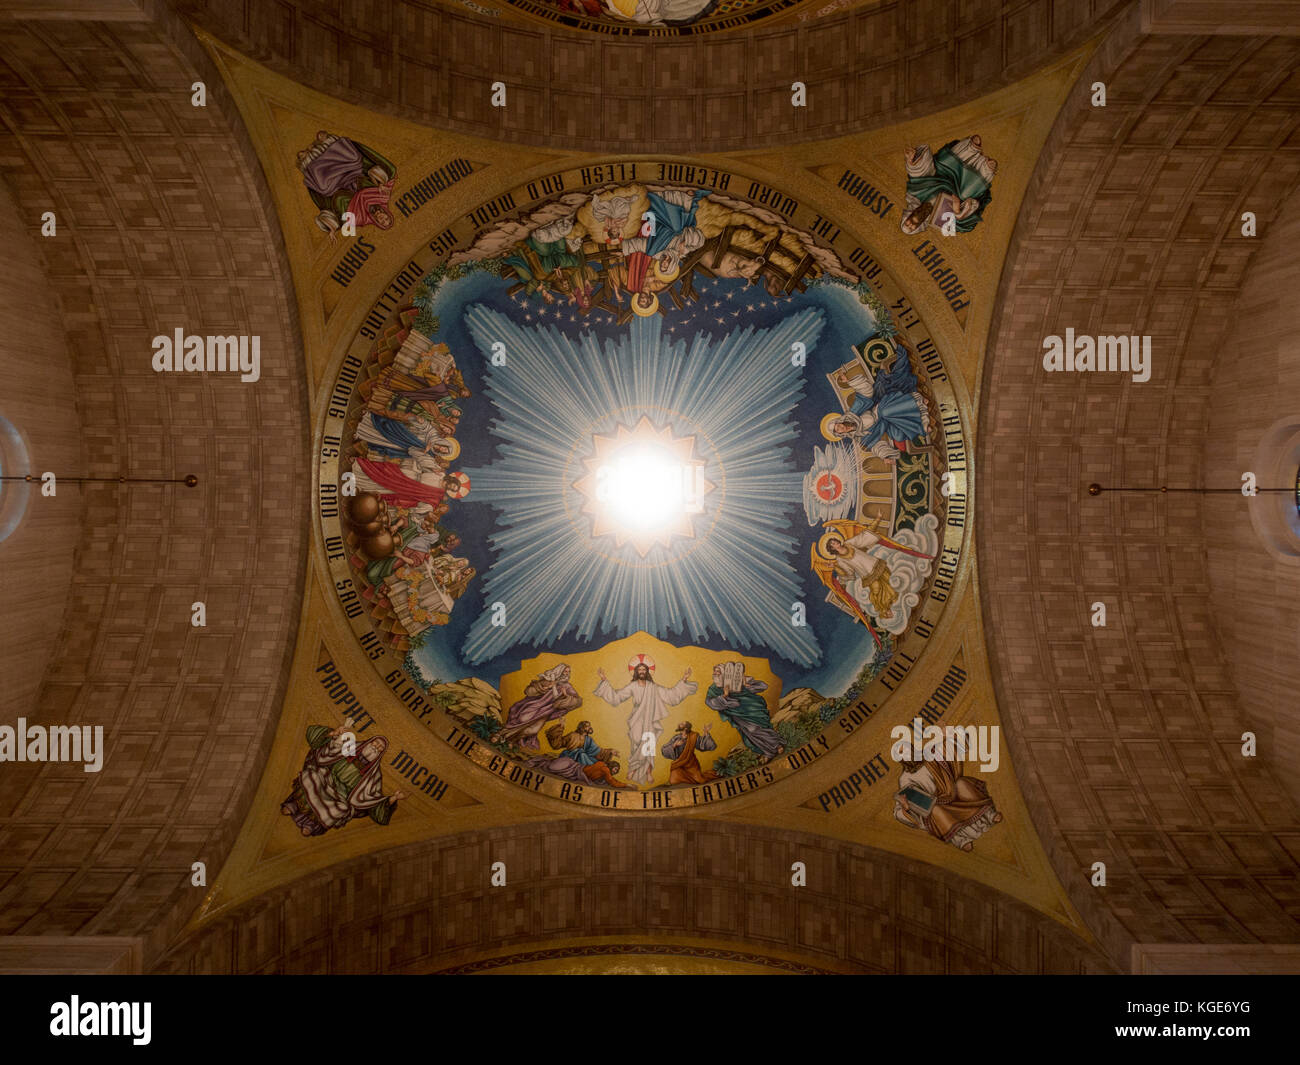 Knights of Columbus incarnazione mosaico cupola all'interno della Basilica del Santuario Nazionale dell Immacolata Concezione a Washington DC, Stati Uniti. Foto Stock